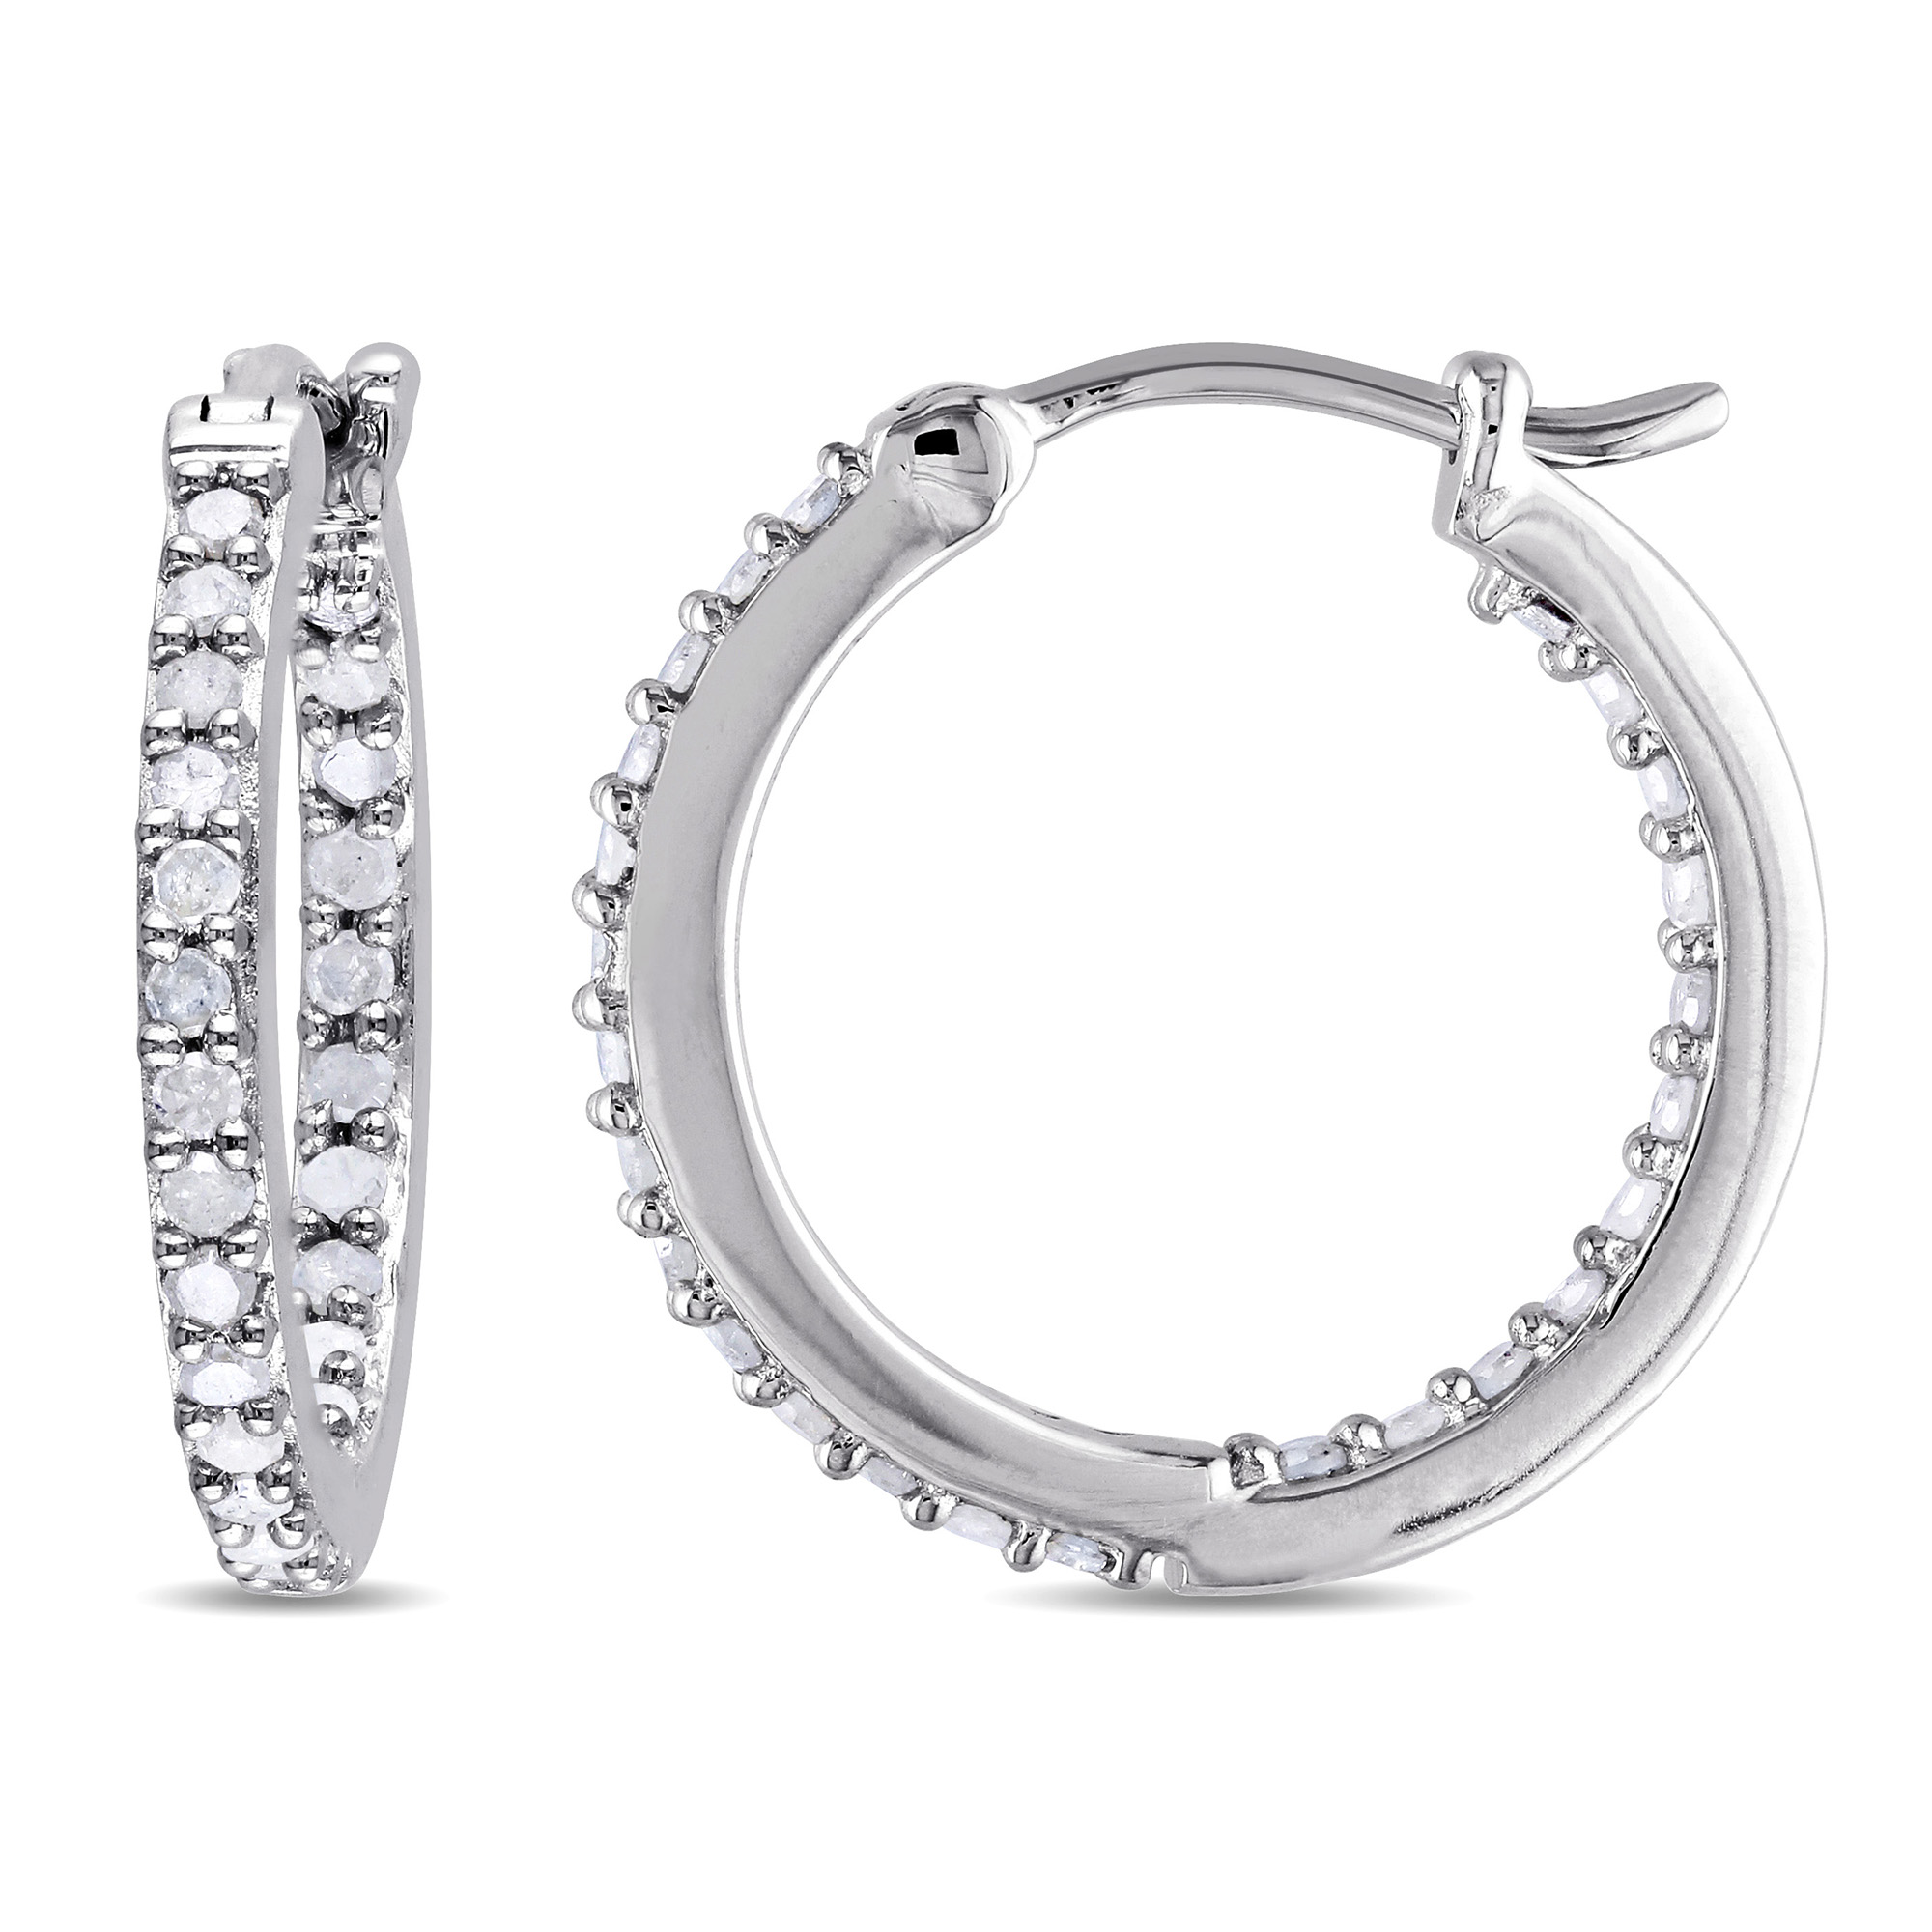 1/2 CT TW Diamond Inside Outside Hoop Earrings in Sterling Silver